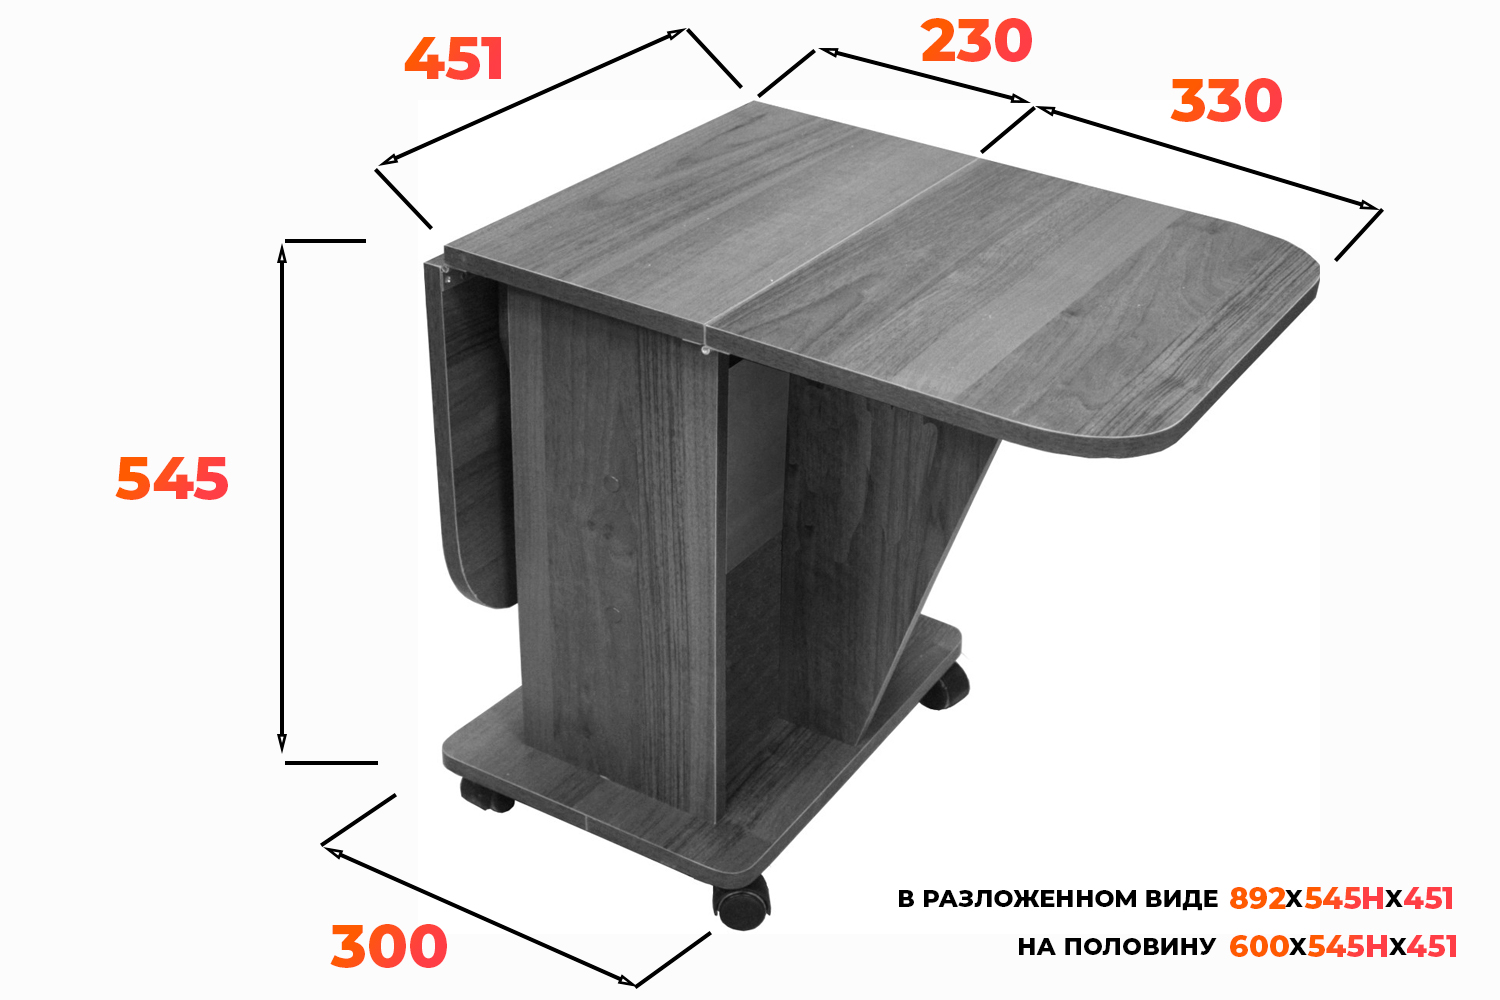 Схема журнального стола СЖ 2.01 с размерами